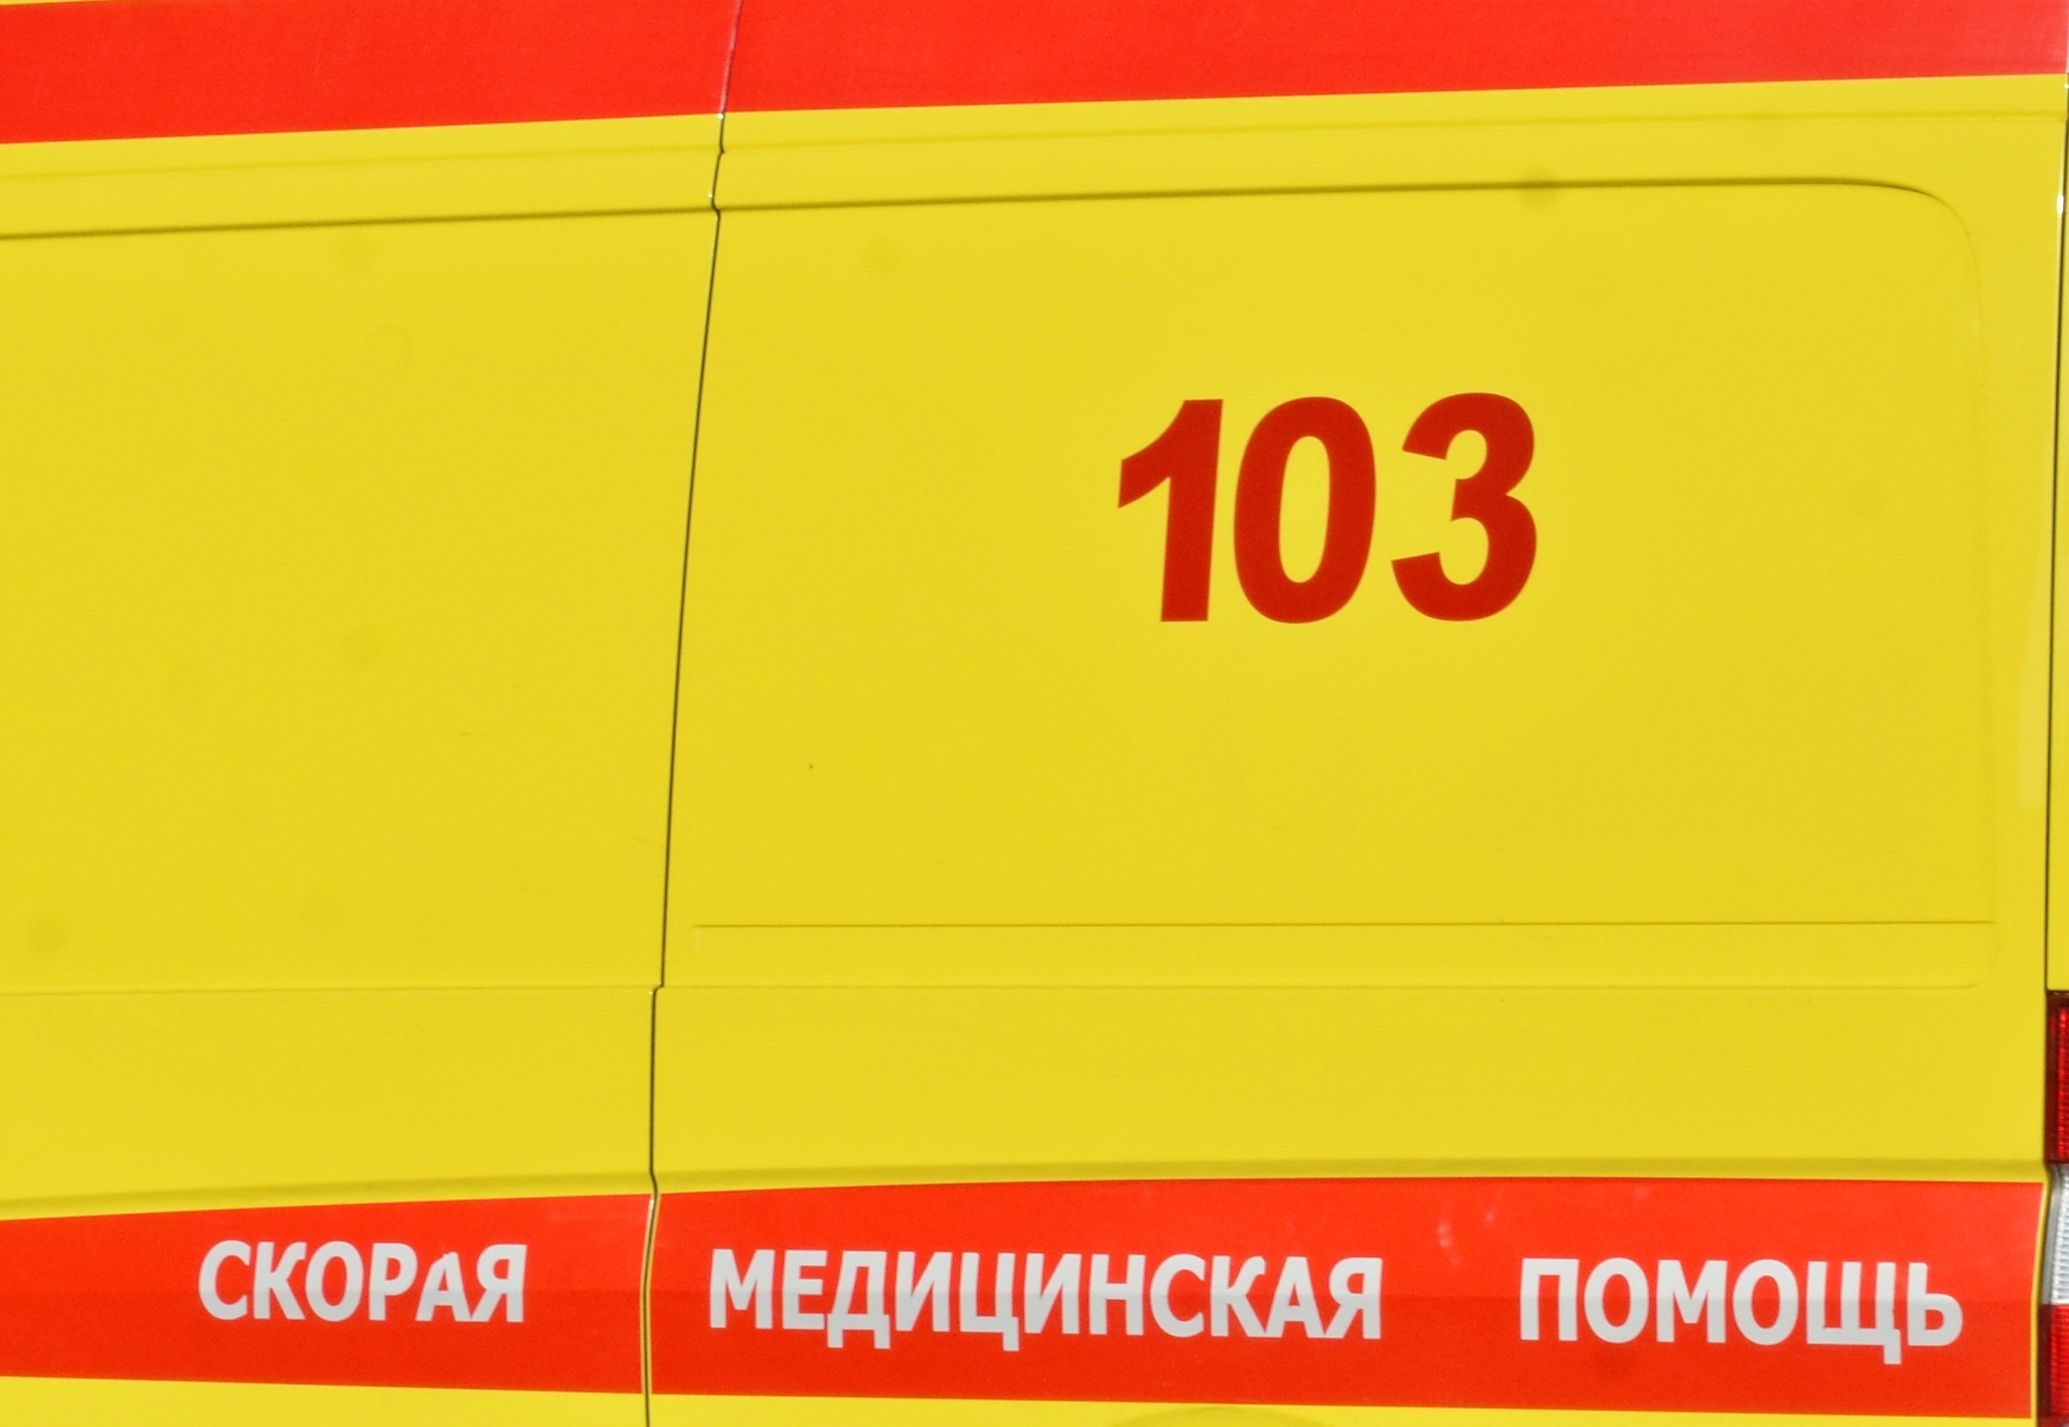 Москвичам рассказали о признаках для обязательного вызова скорой помощи